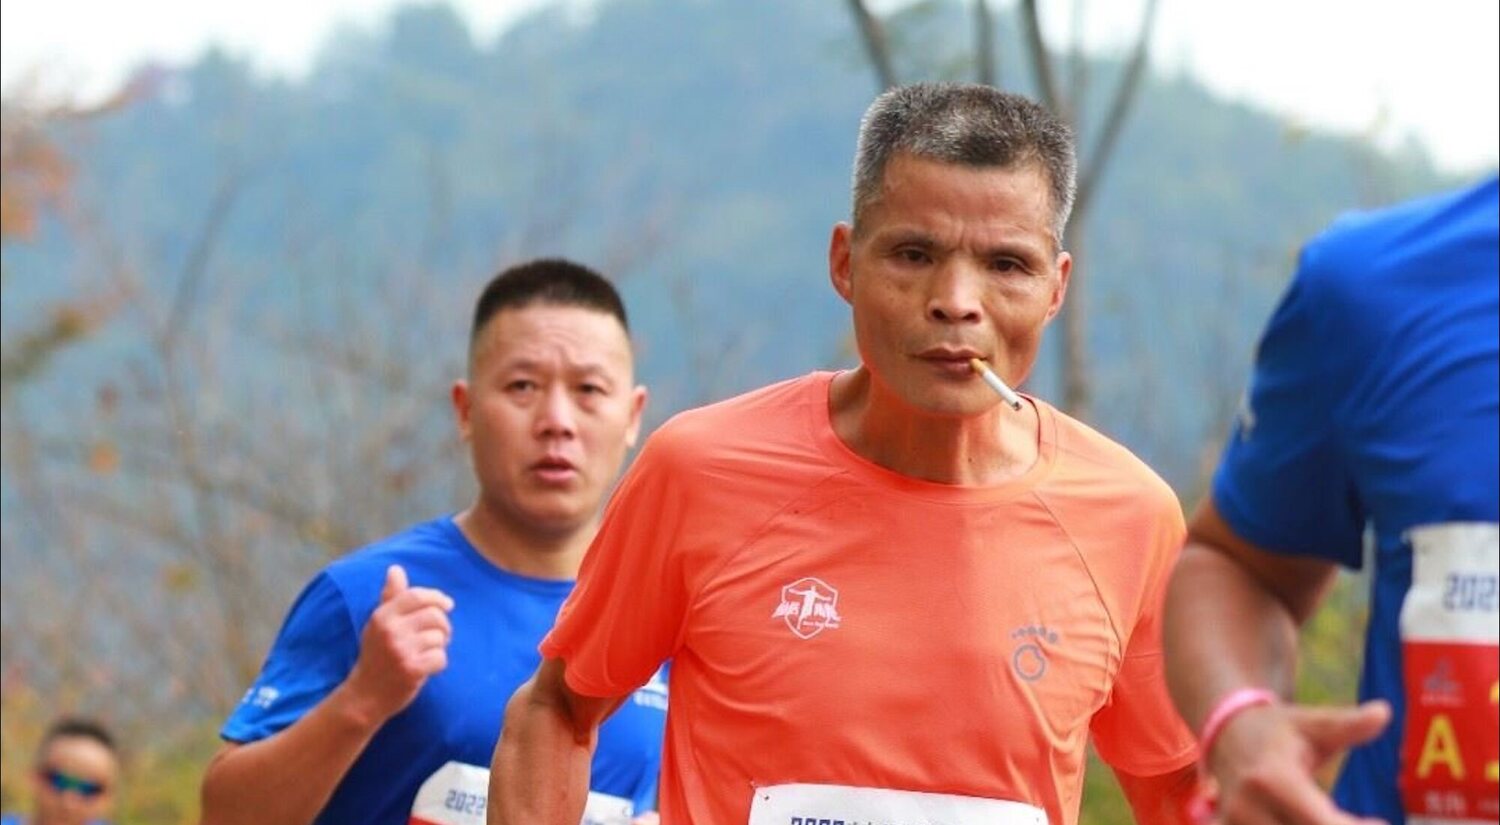 Un runner chino corre maratones fumando y genera un debate sobre las normativas en las carreras